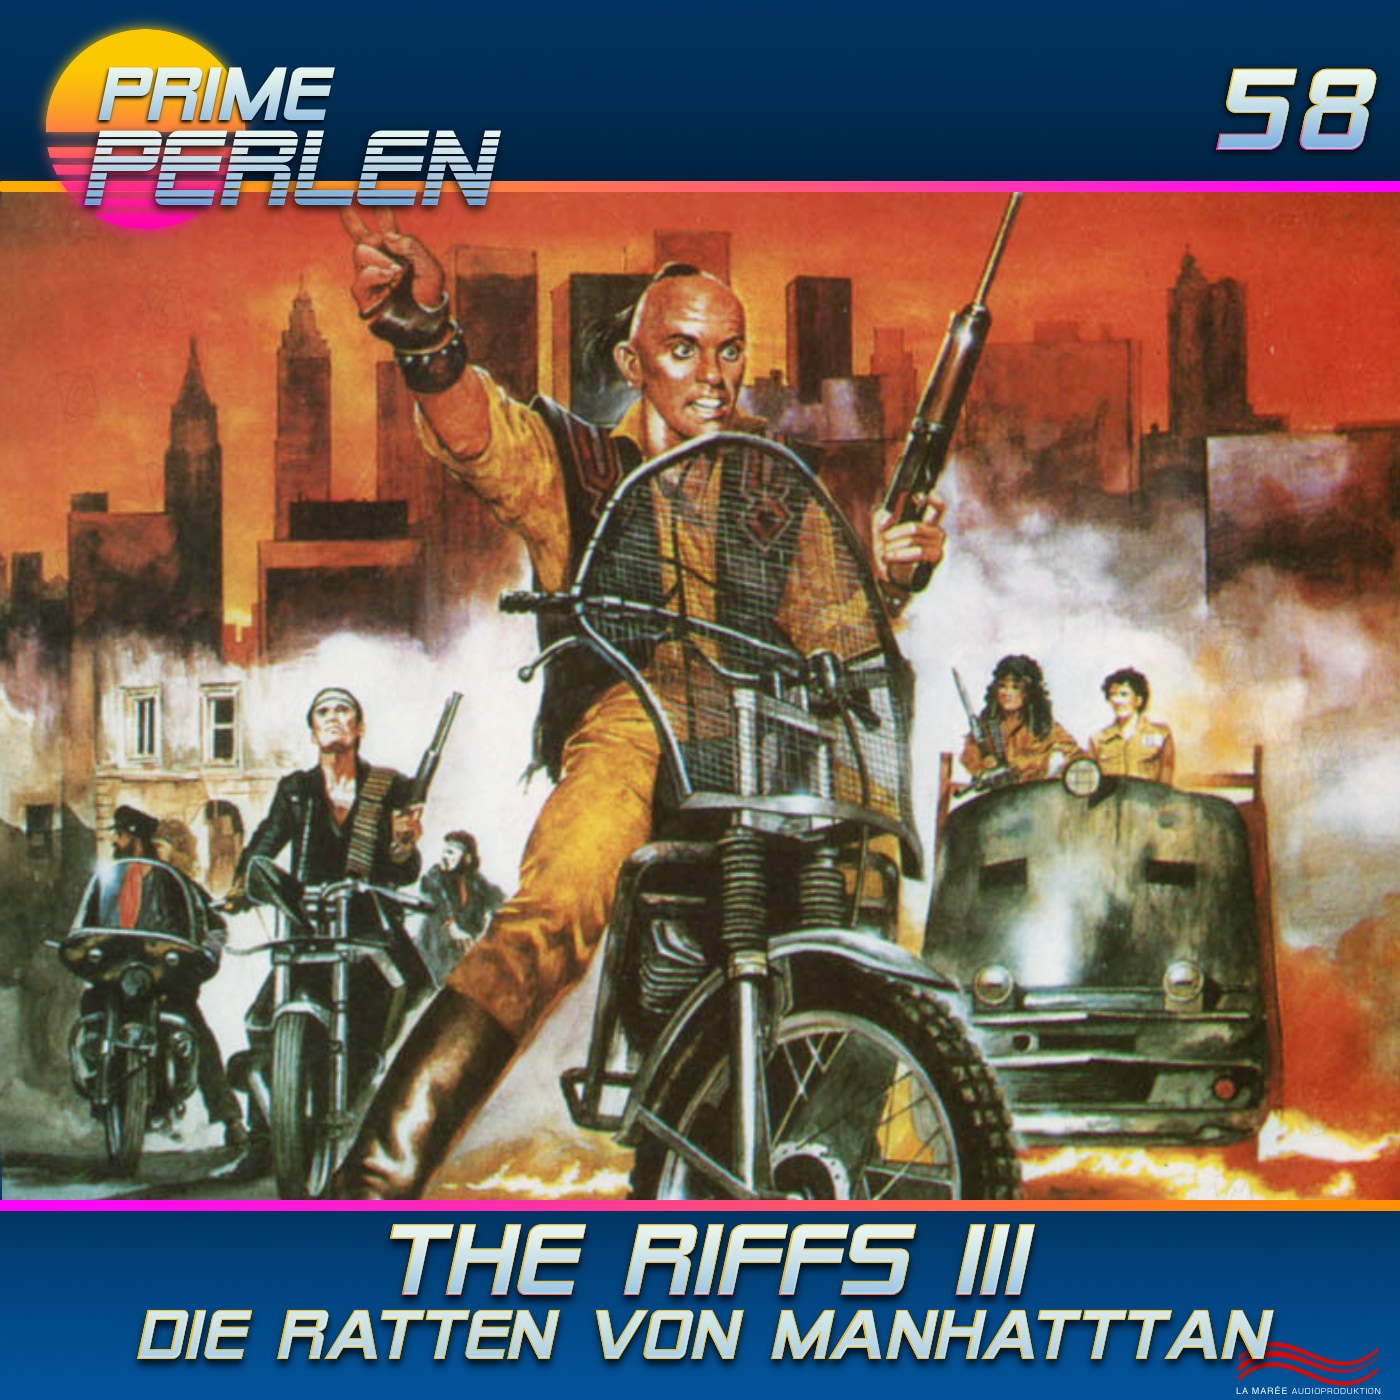 Prime Perlen #58 – The Riffs III - Die Ratten von Manhattan